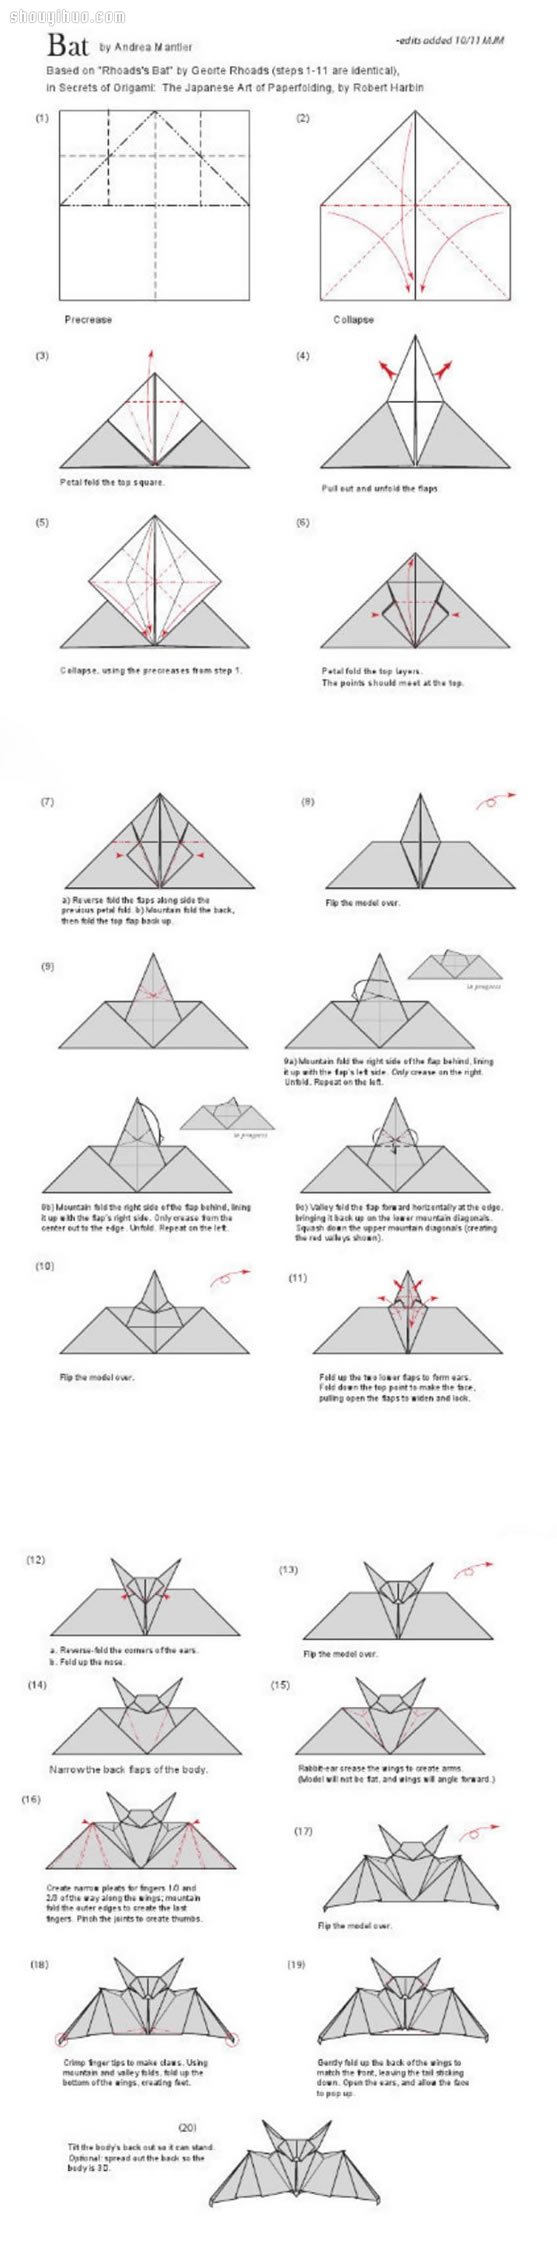 蝙蝠的折法图解 手工折纸蝙蝠步骤教程